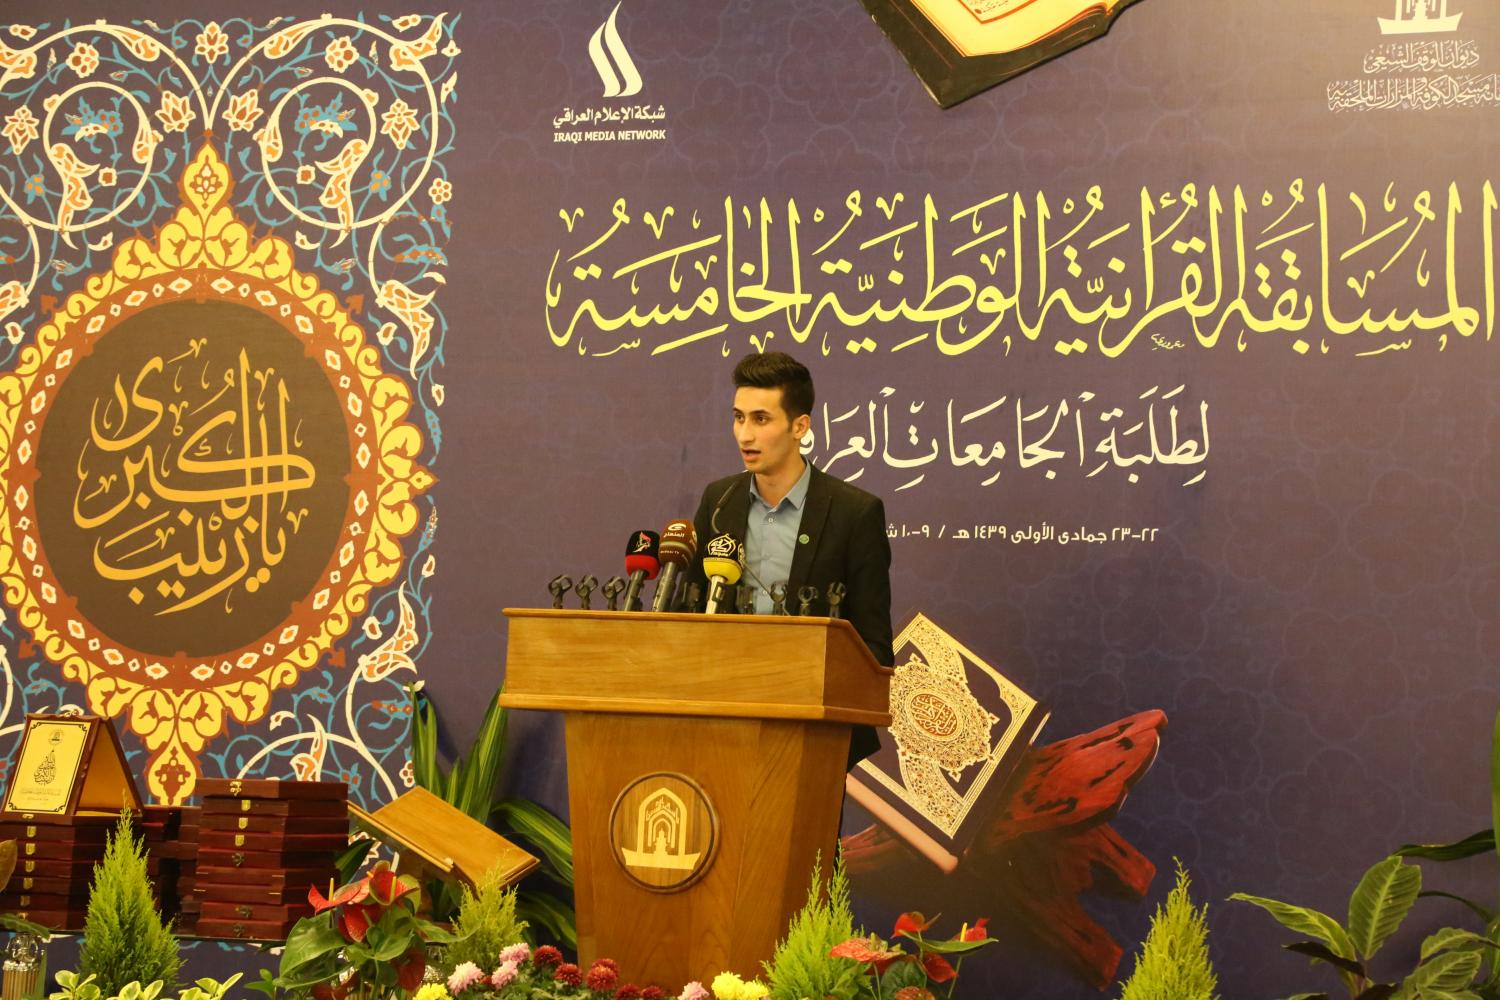 المسابقة الوطنية الخامسة لطلبة الجامعات في مسجد الكوفة المعظم